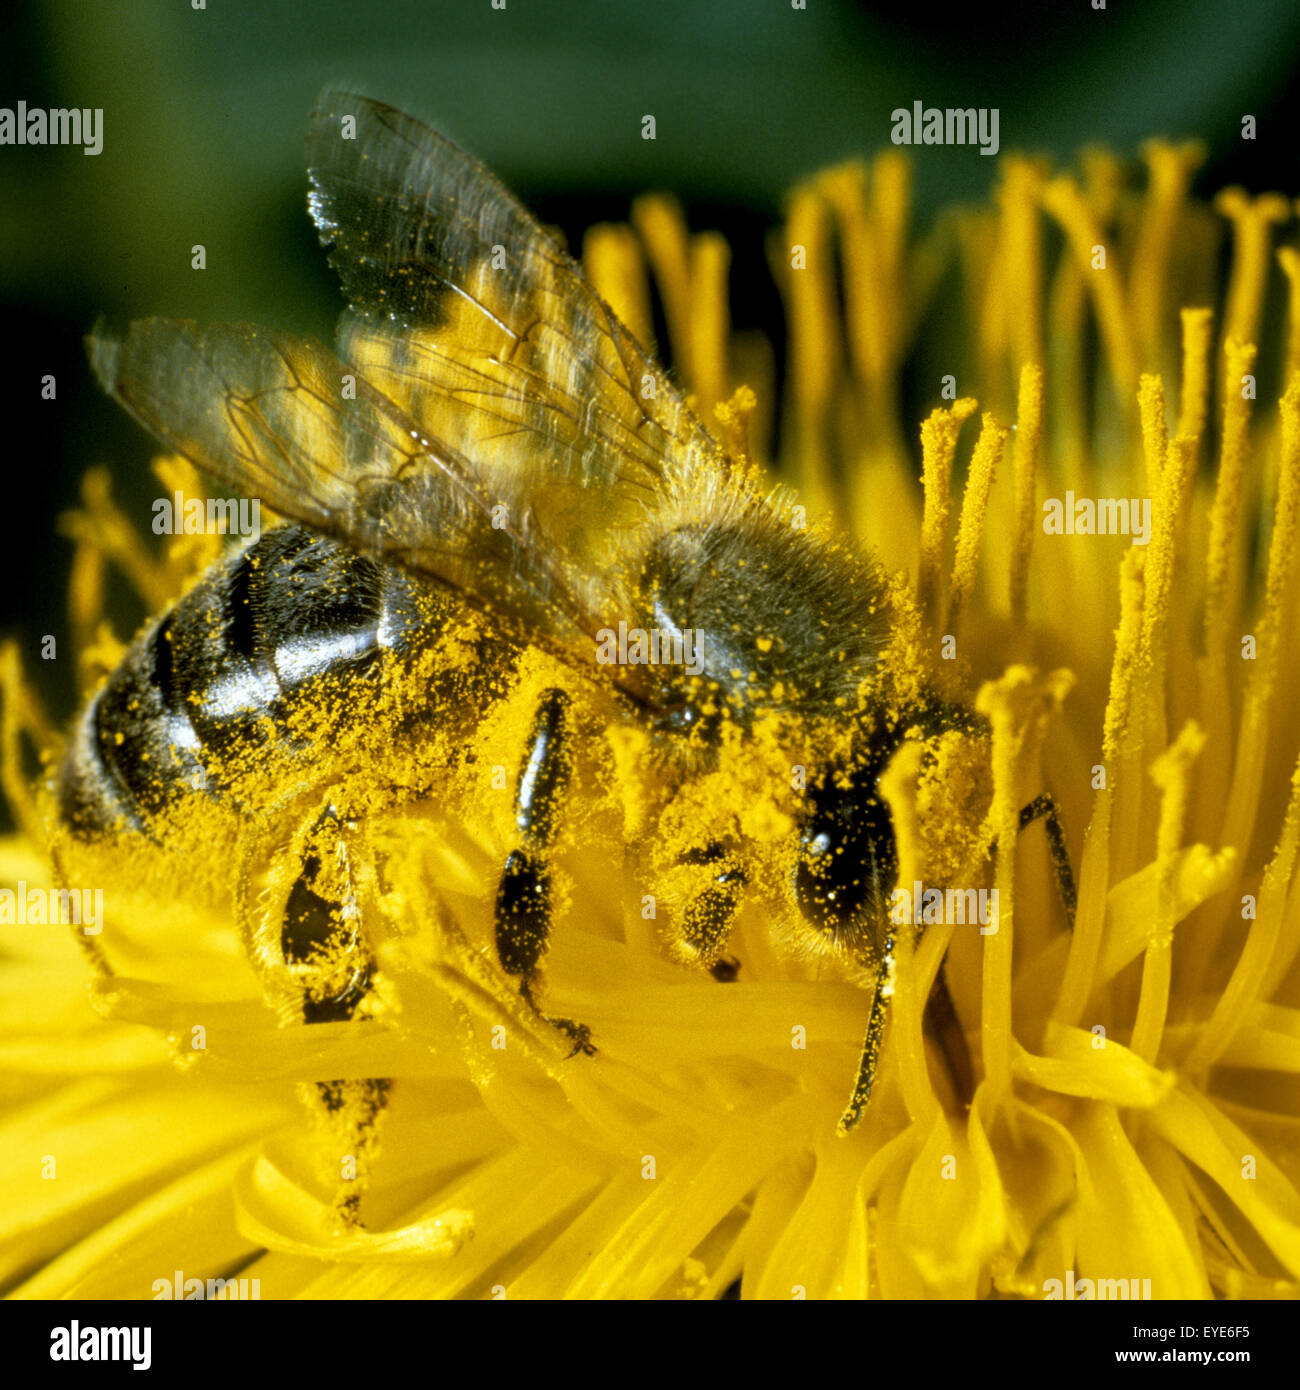 Biene, Apis mellifera, Honigbiene, Insekt, Bestäubung, Biene auf Löwenzahn, Blütenstaub, polline Foto Stock